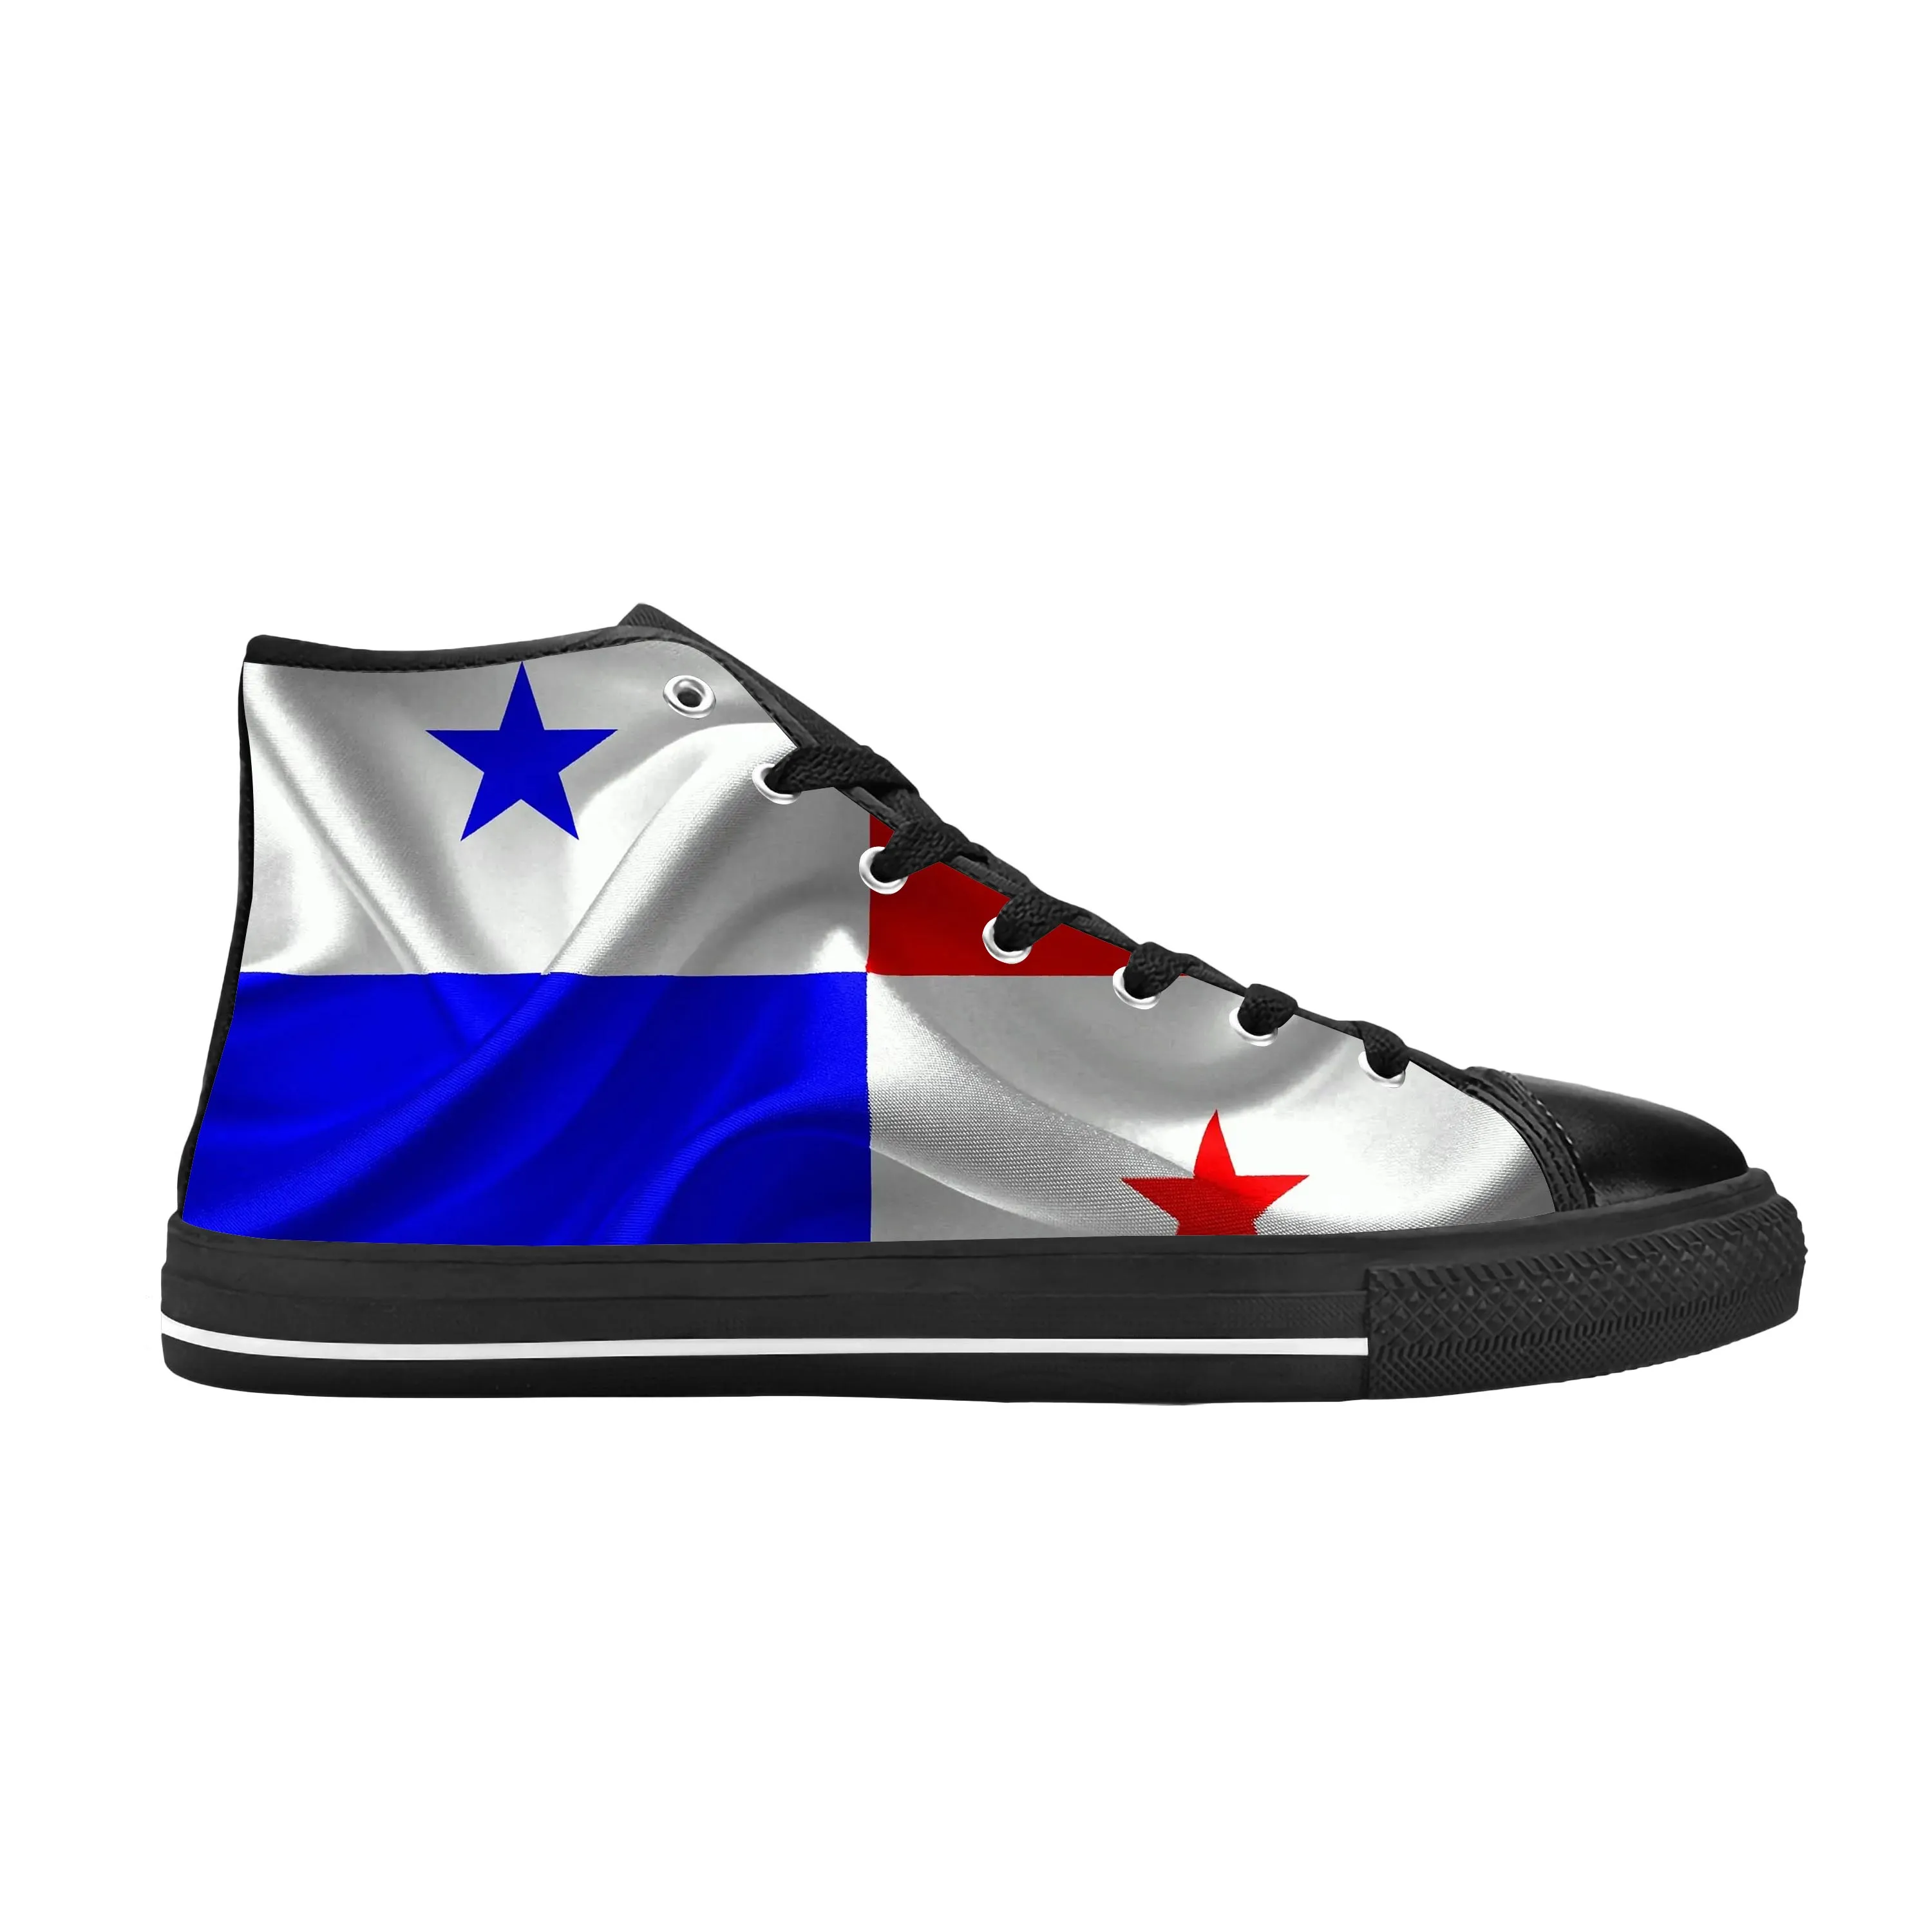 

Панама с флагом Панамы патриотическая, крутая забавная Повседневная Тканевая обувь с высоким берцем, удобные дышащие кроссовки с 3D принтом для мужчин и женщин